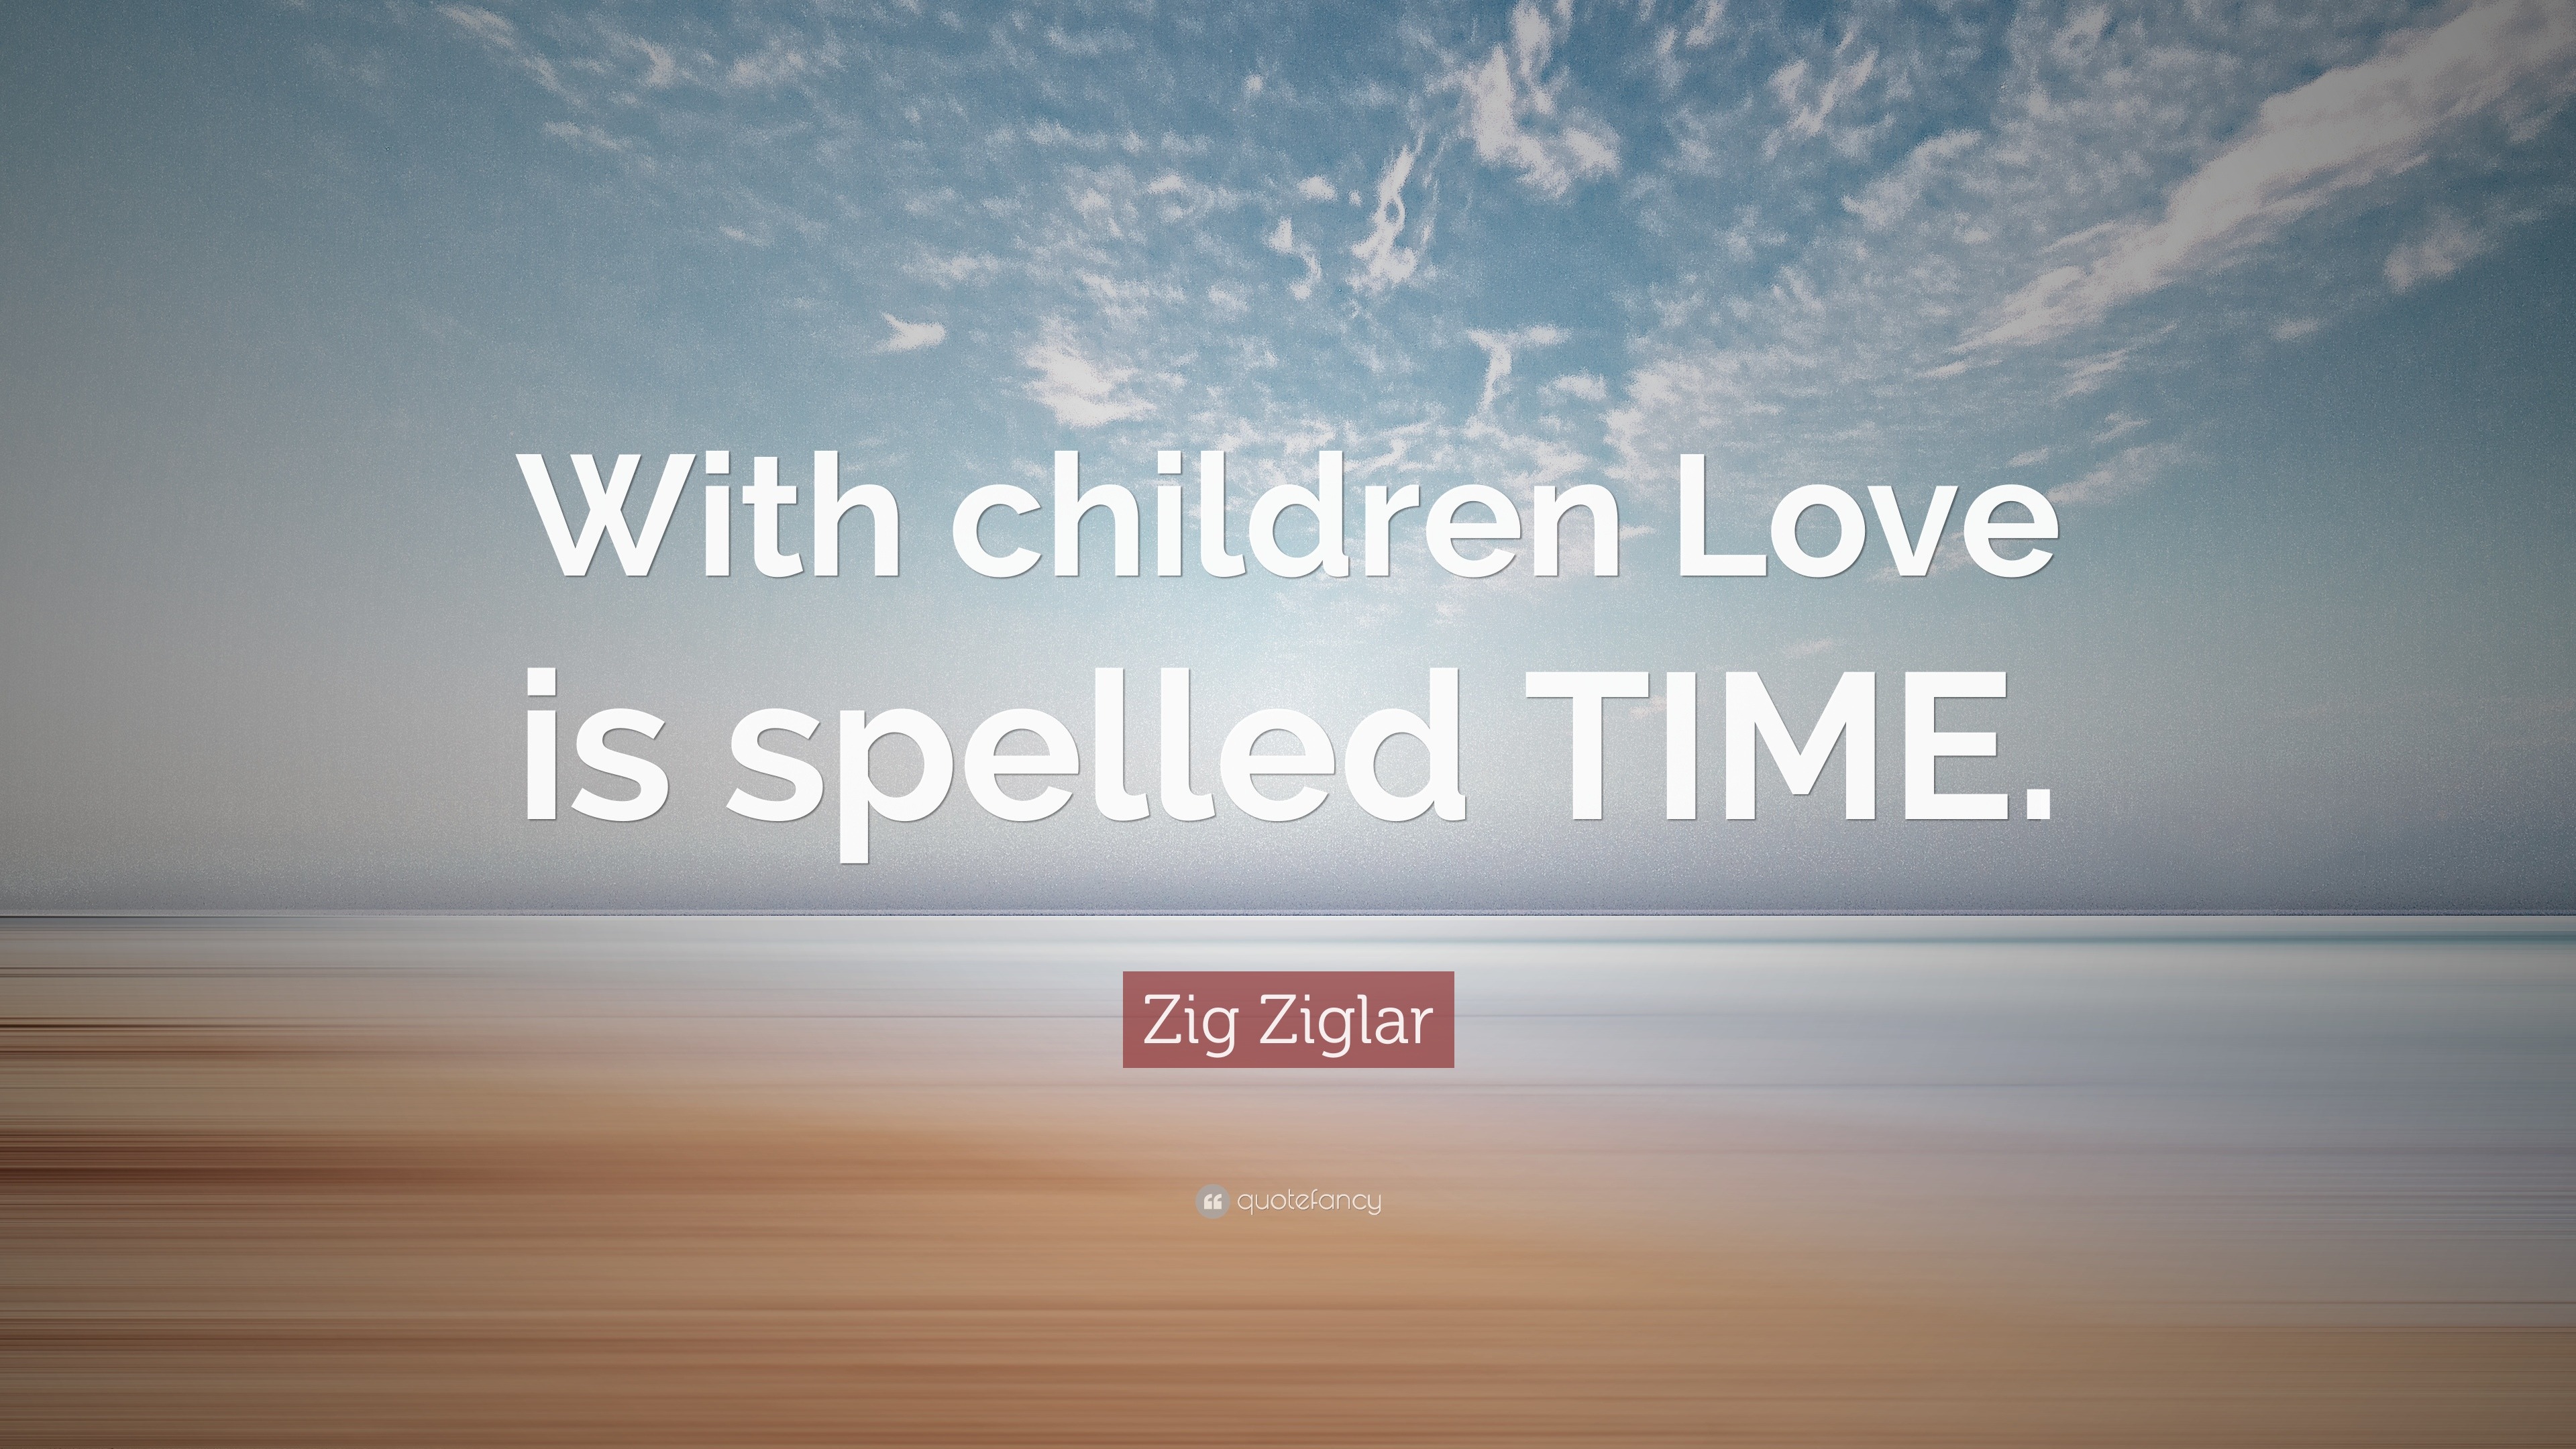 Zig Ziglar Quote “With children Love is spelled TIME ”